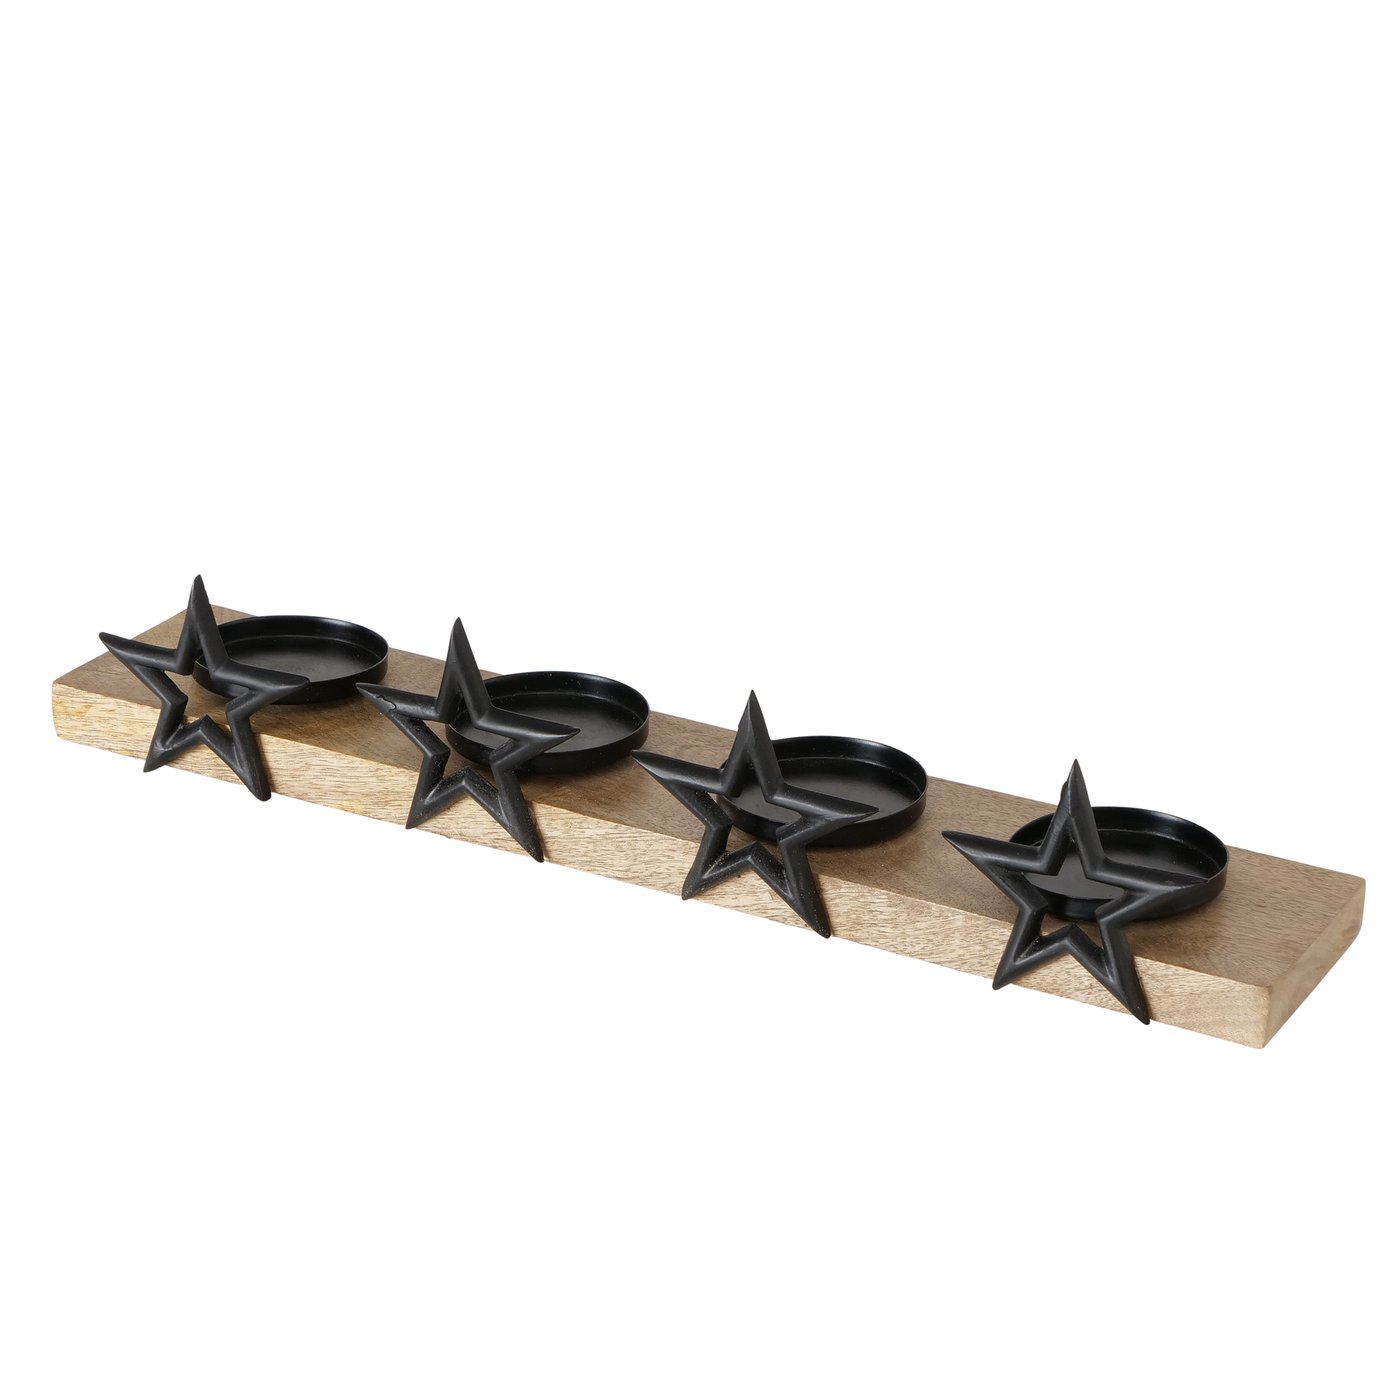 Holz Kerzentablett mit 4 Kerzenhaltern und 4 schwarzen Sternen, 2024584, 4066076067480, Kerzenständer, Adventstablett,